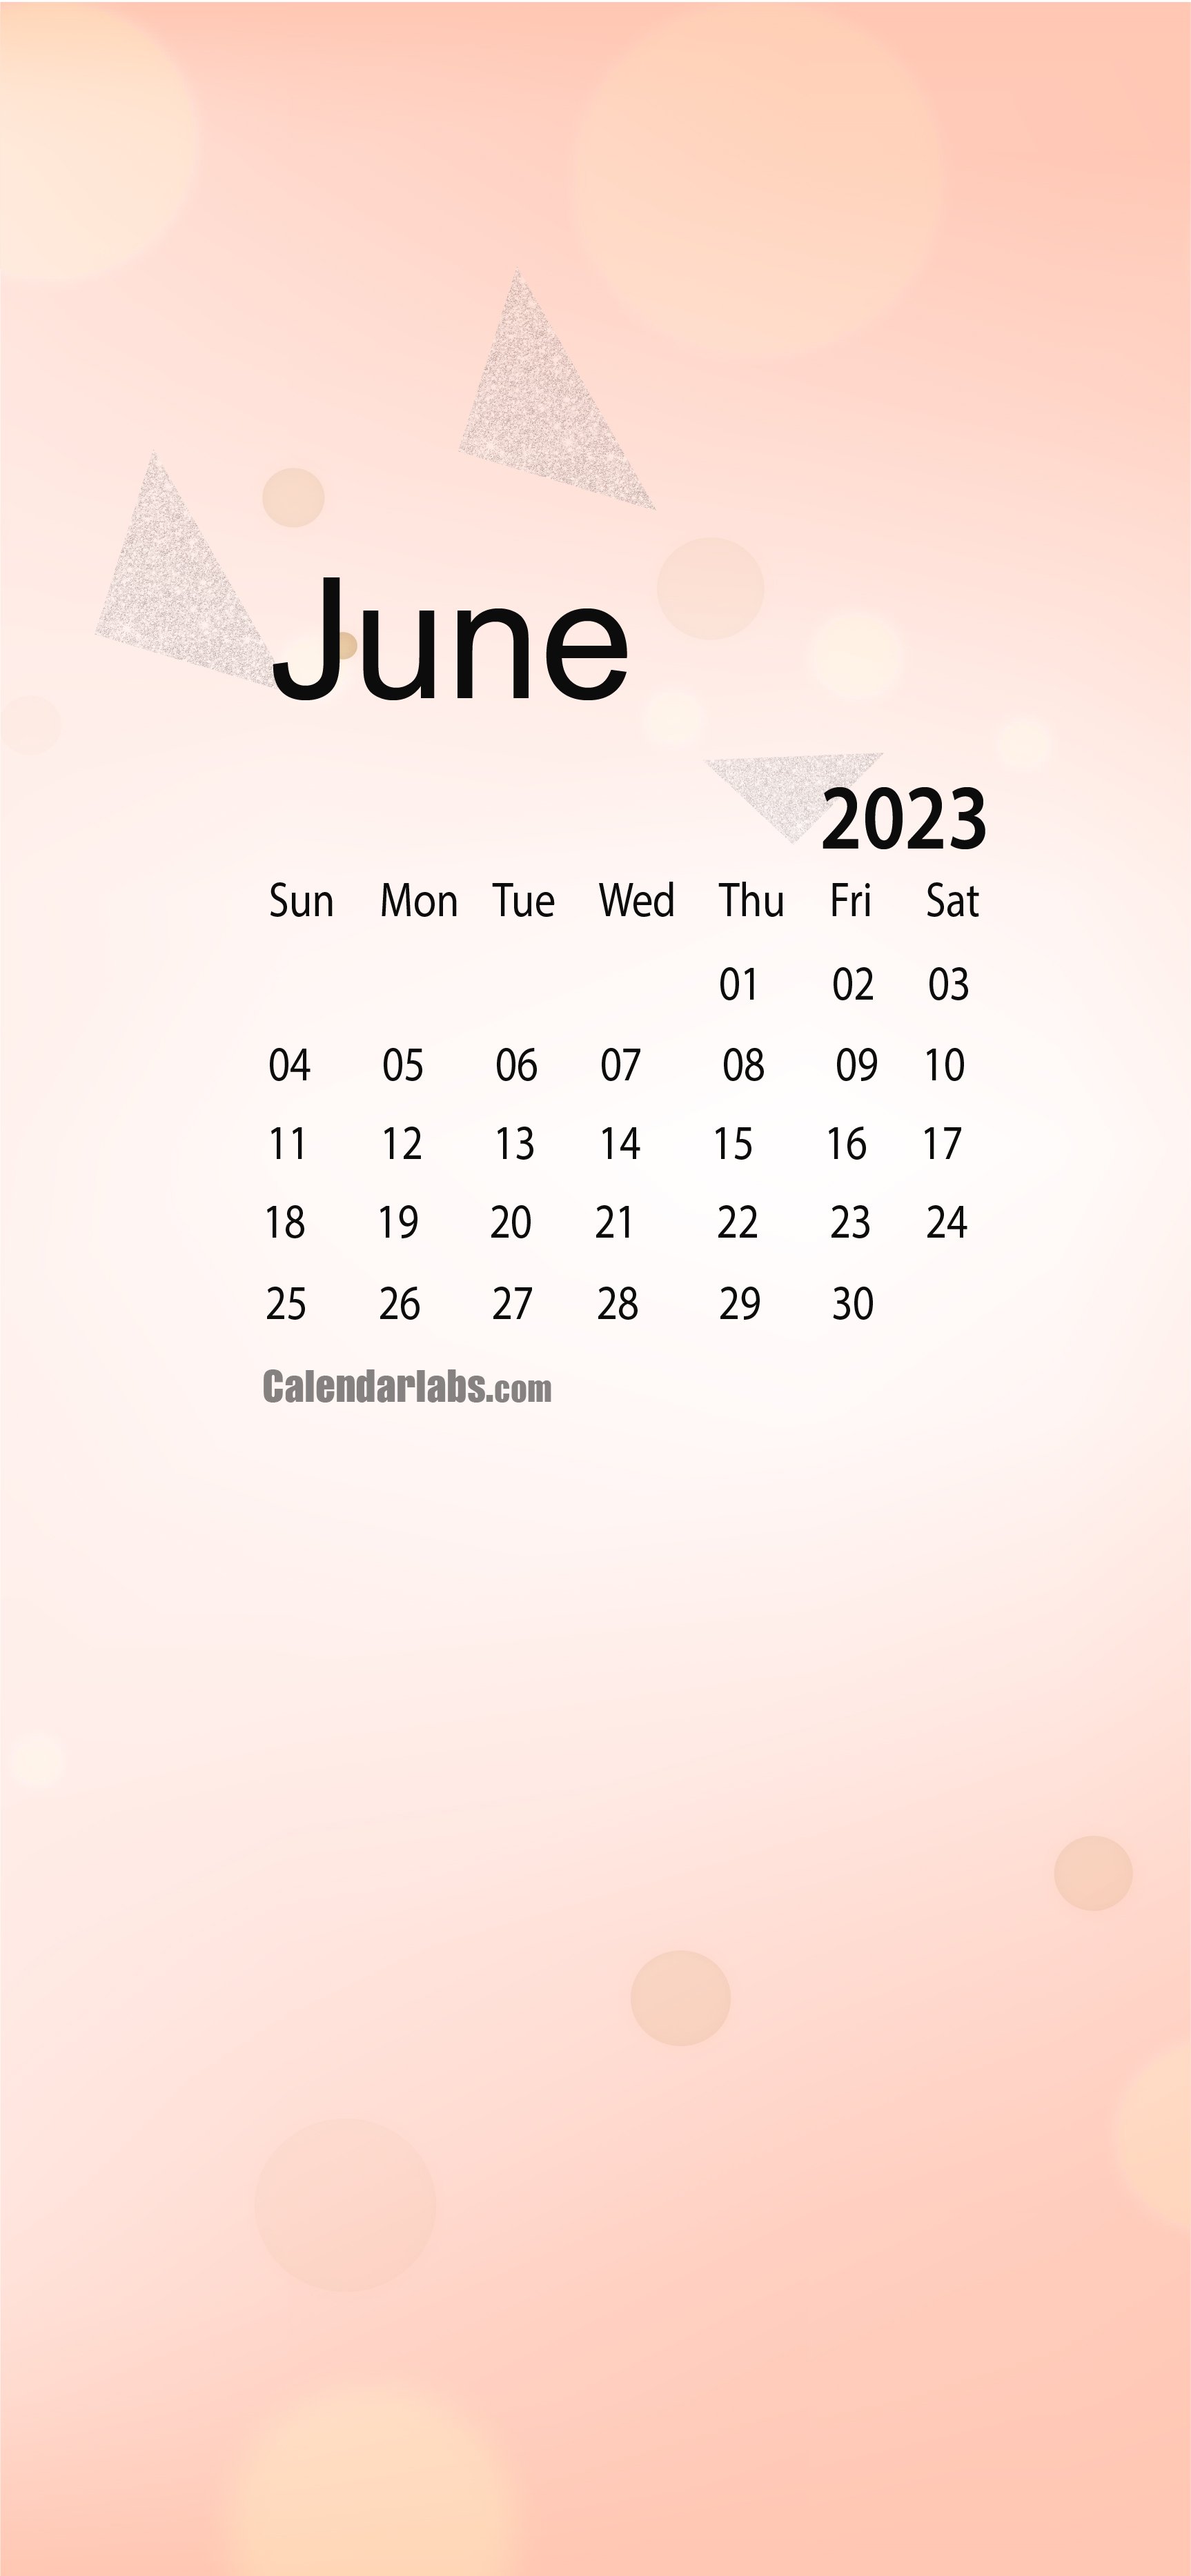 June 2023 Desktop Wallpapers Calendar